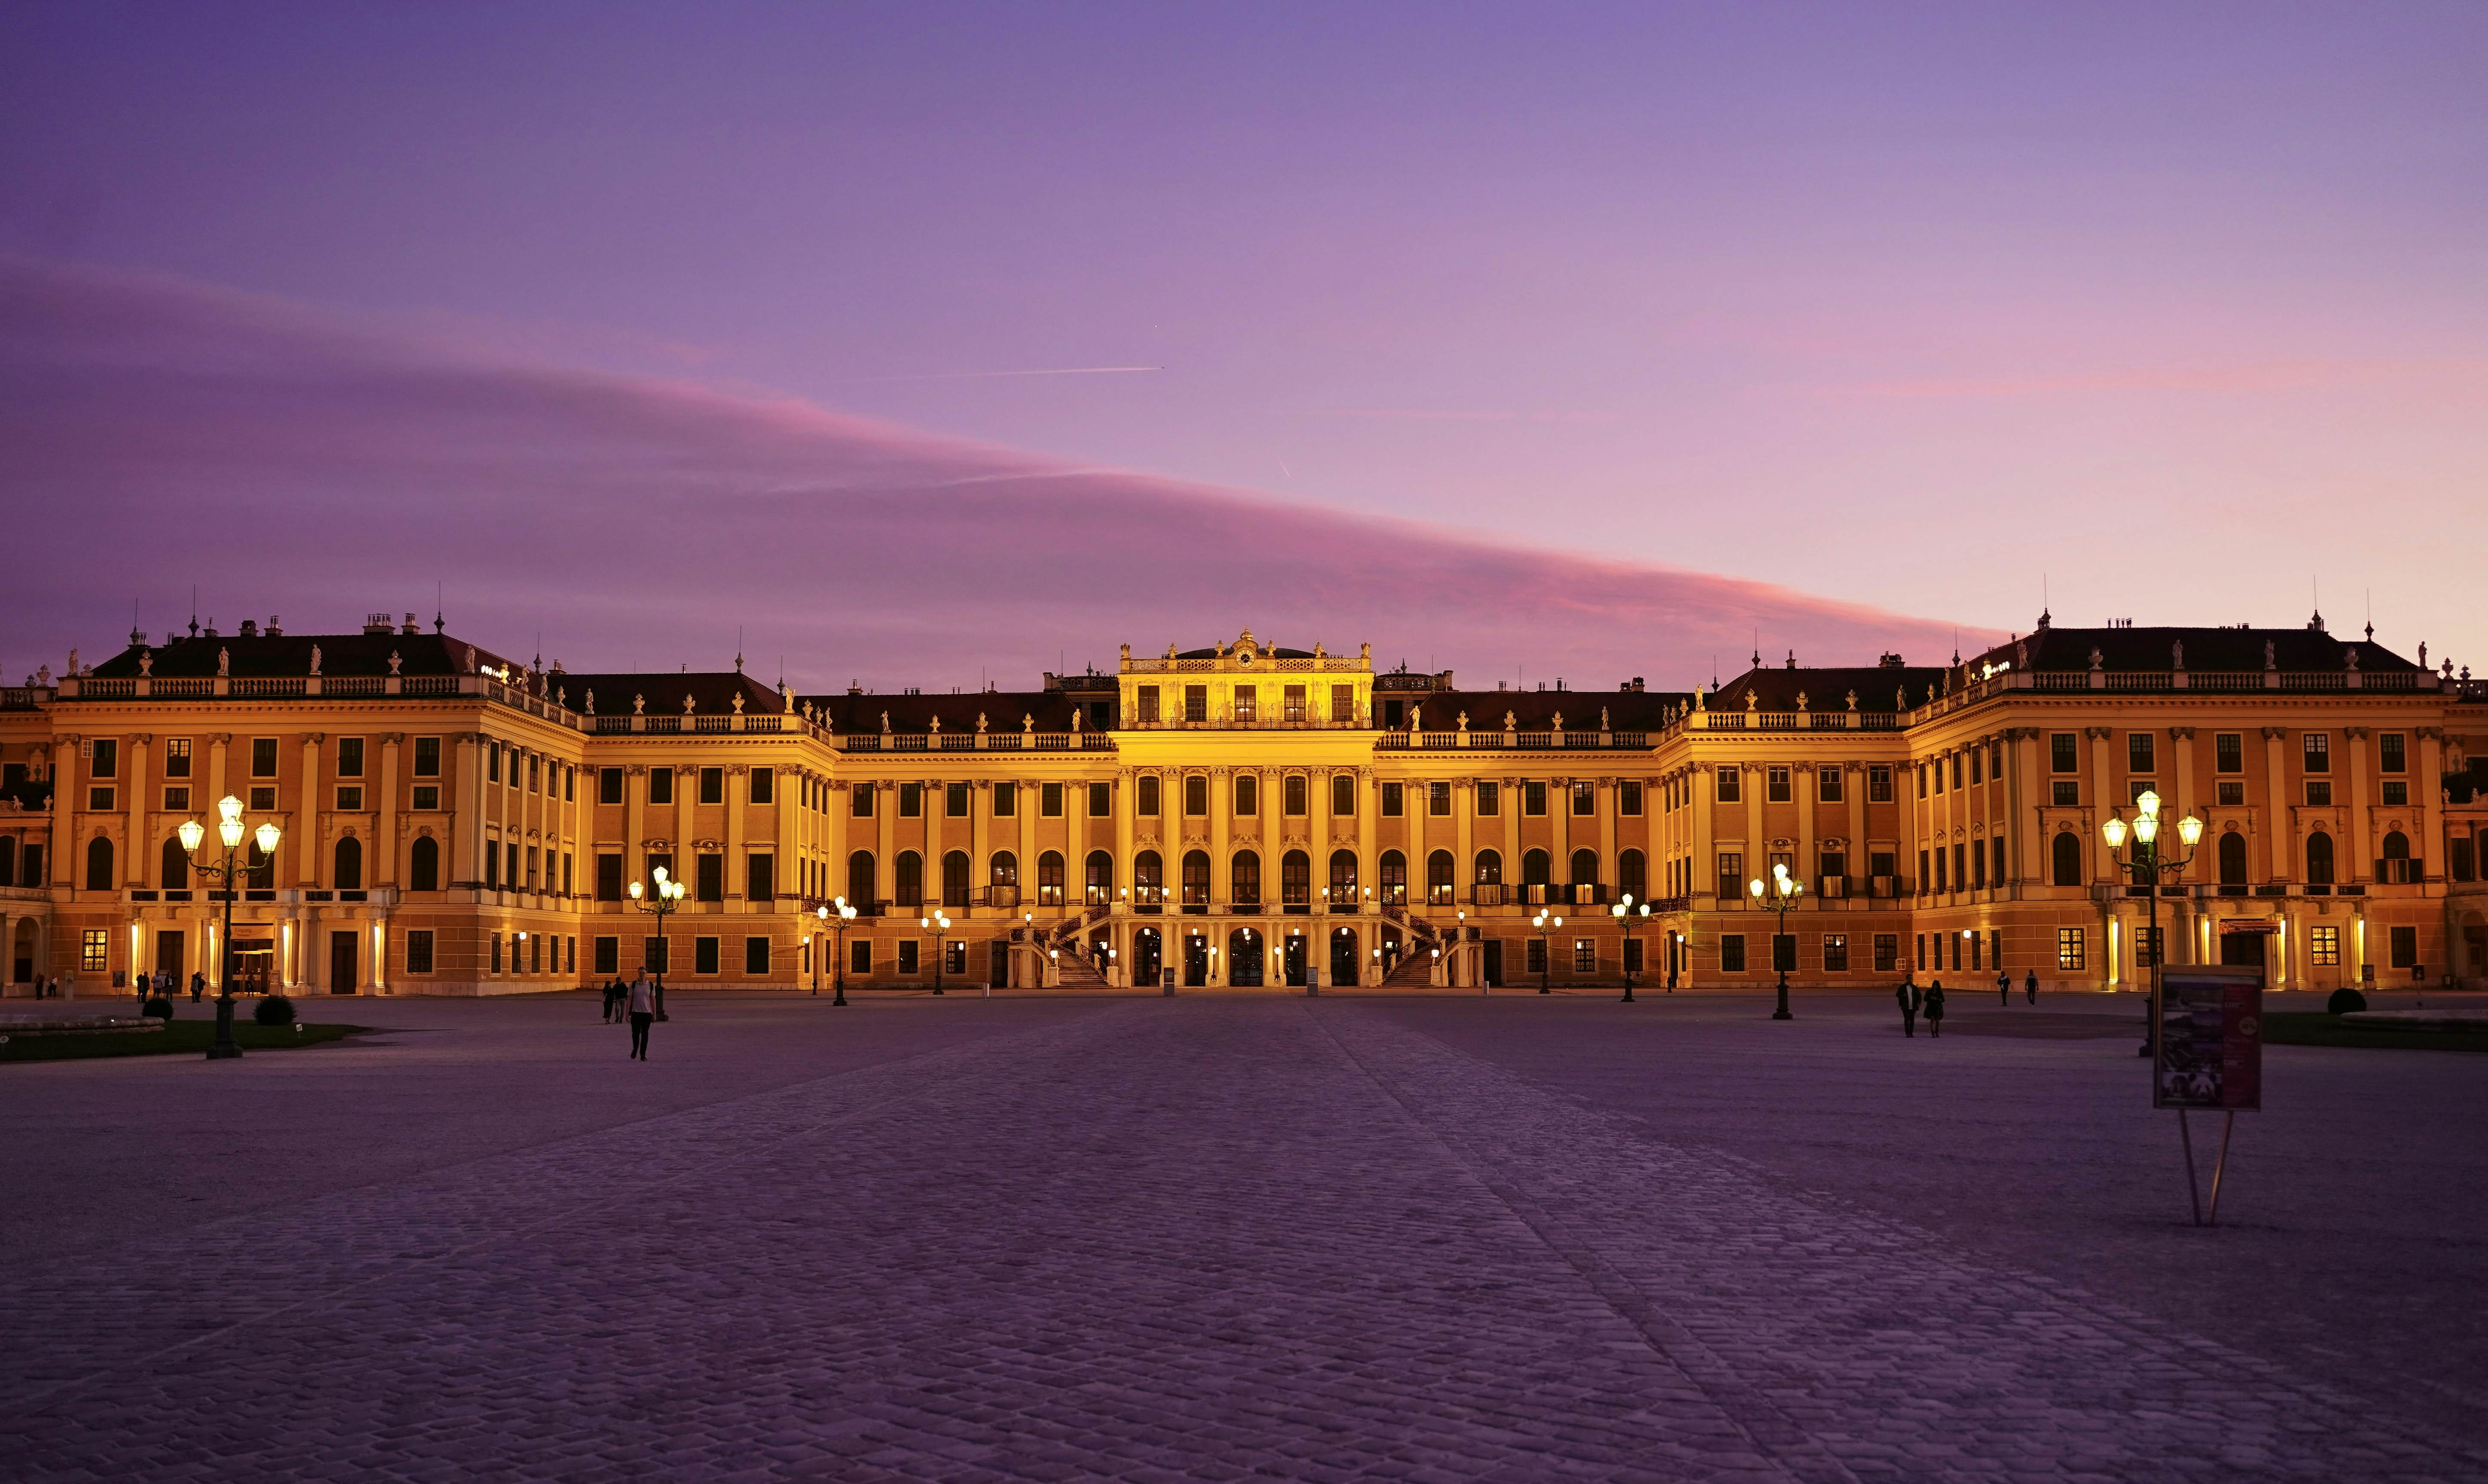 The SchÃ¶nbrunn Palace, in Vienna